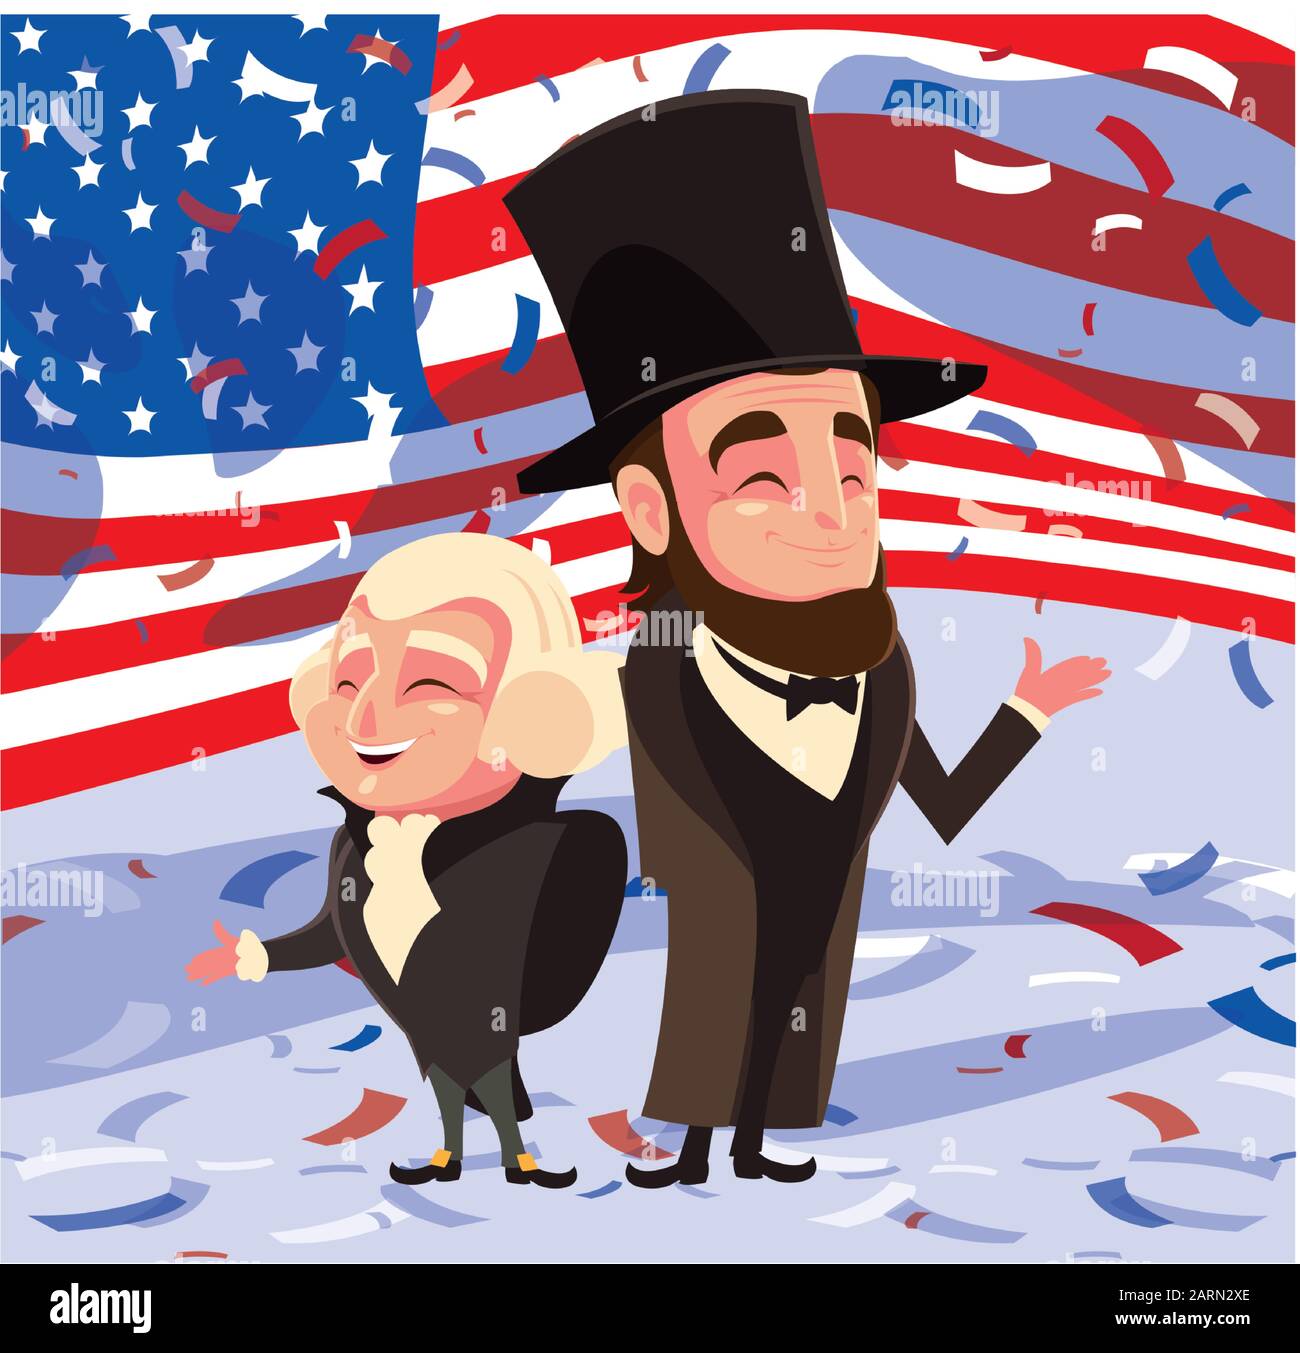 cartone animato dei presidenti george washington e abraham lincoln, president day vector illustration design Illustrazione Vettoriale